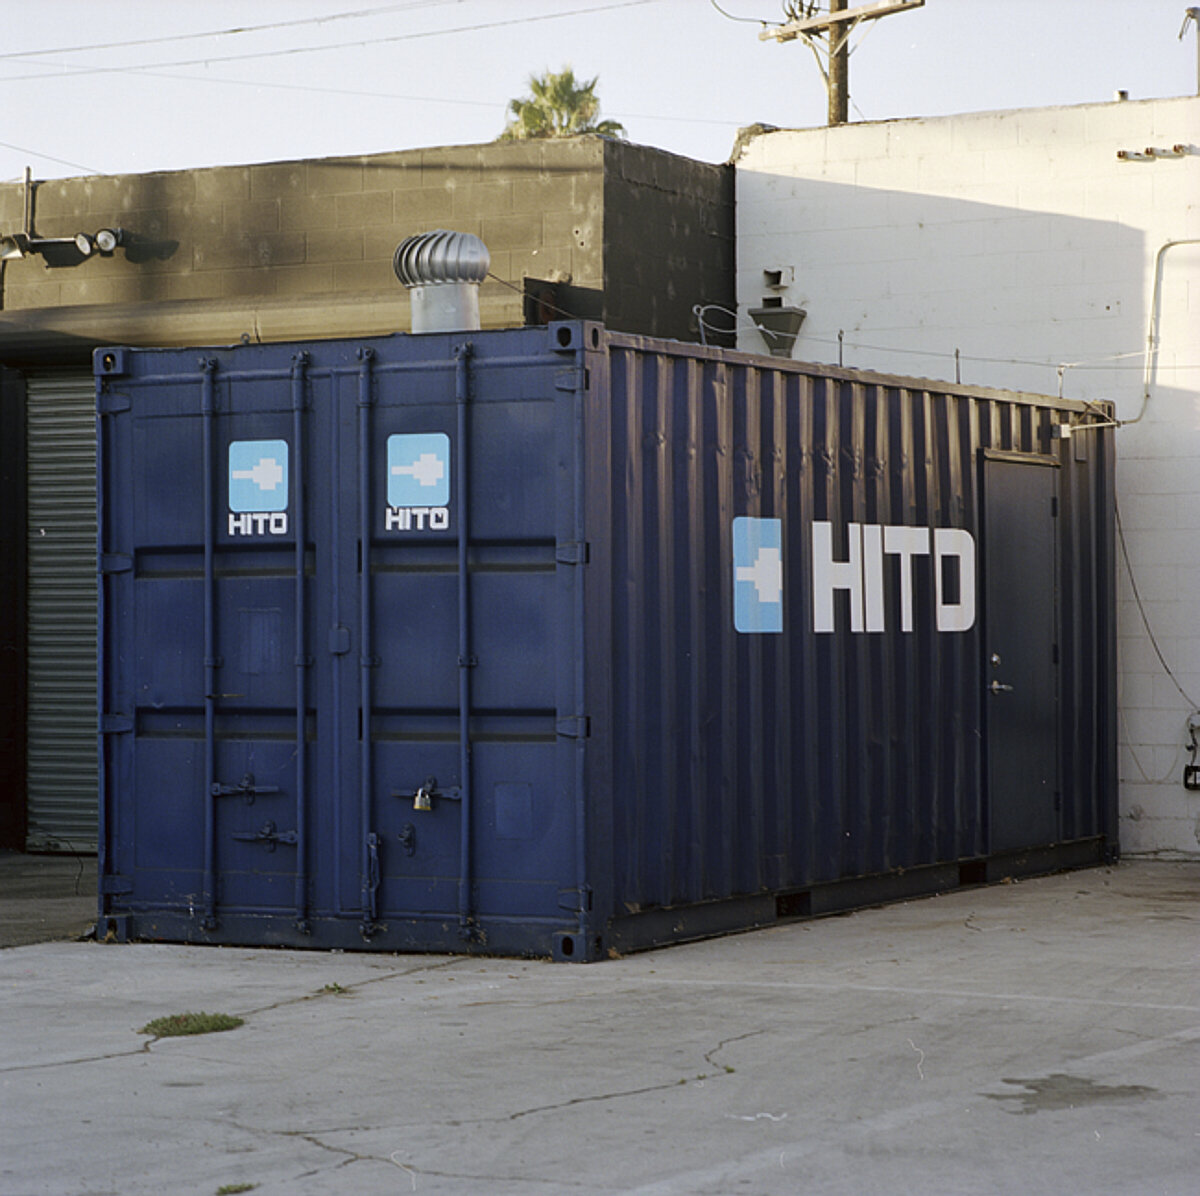 HITO container